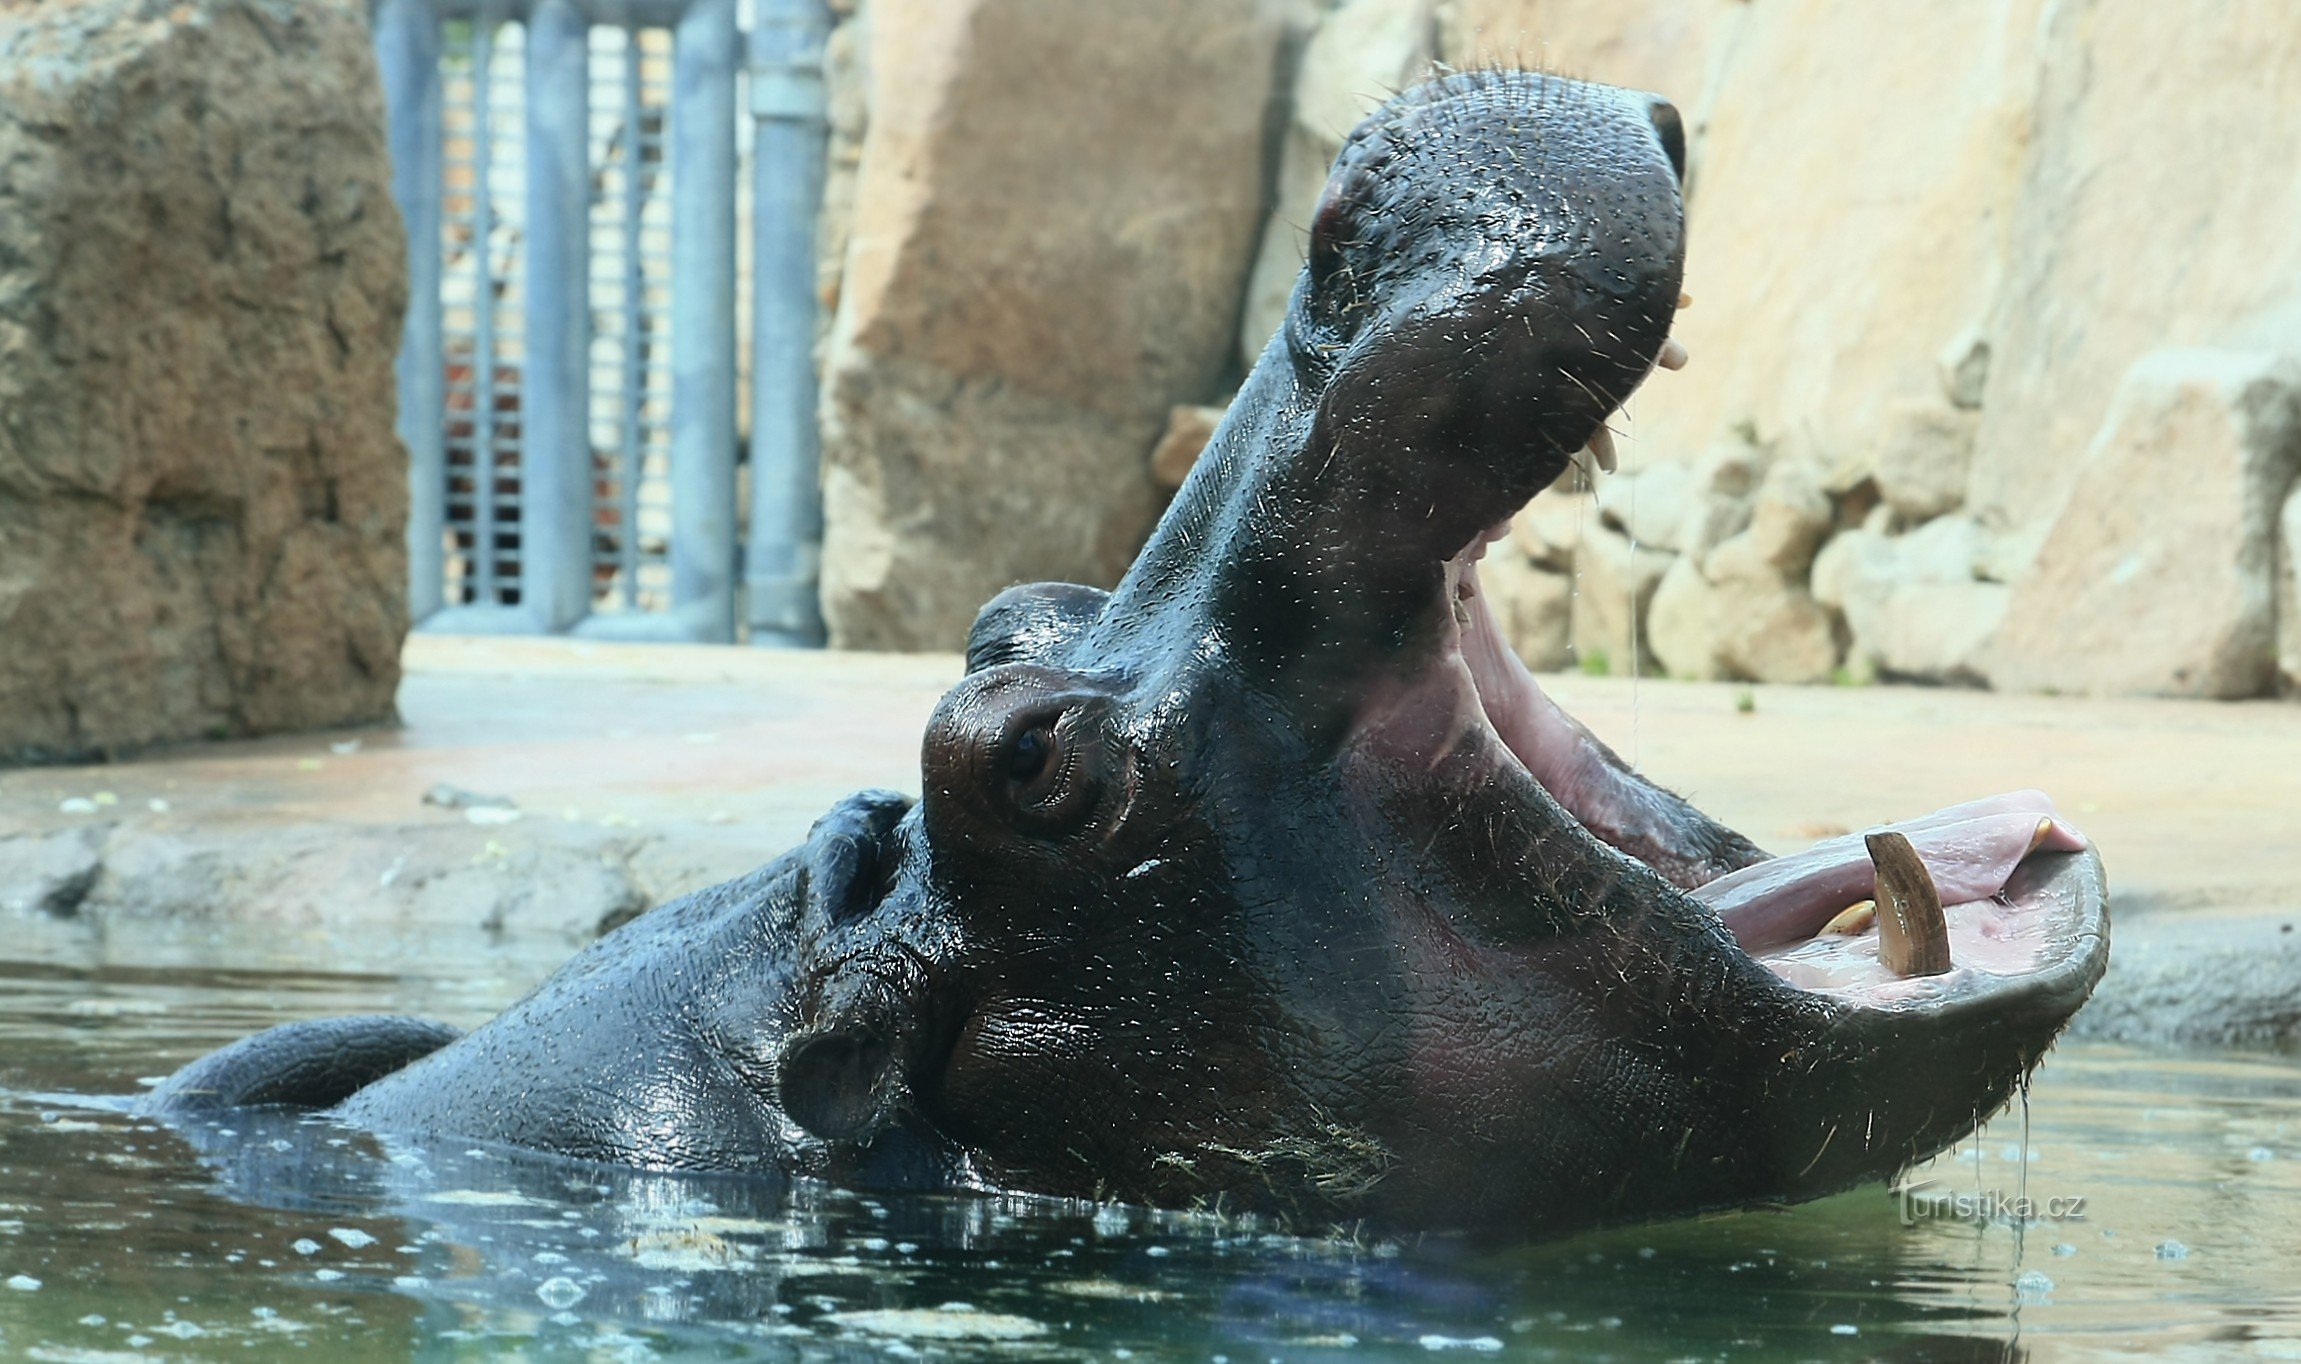 ZOO Praga Troja 2014 - um hipopótamo atrás do vidro